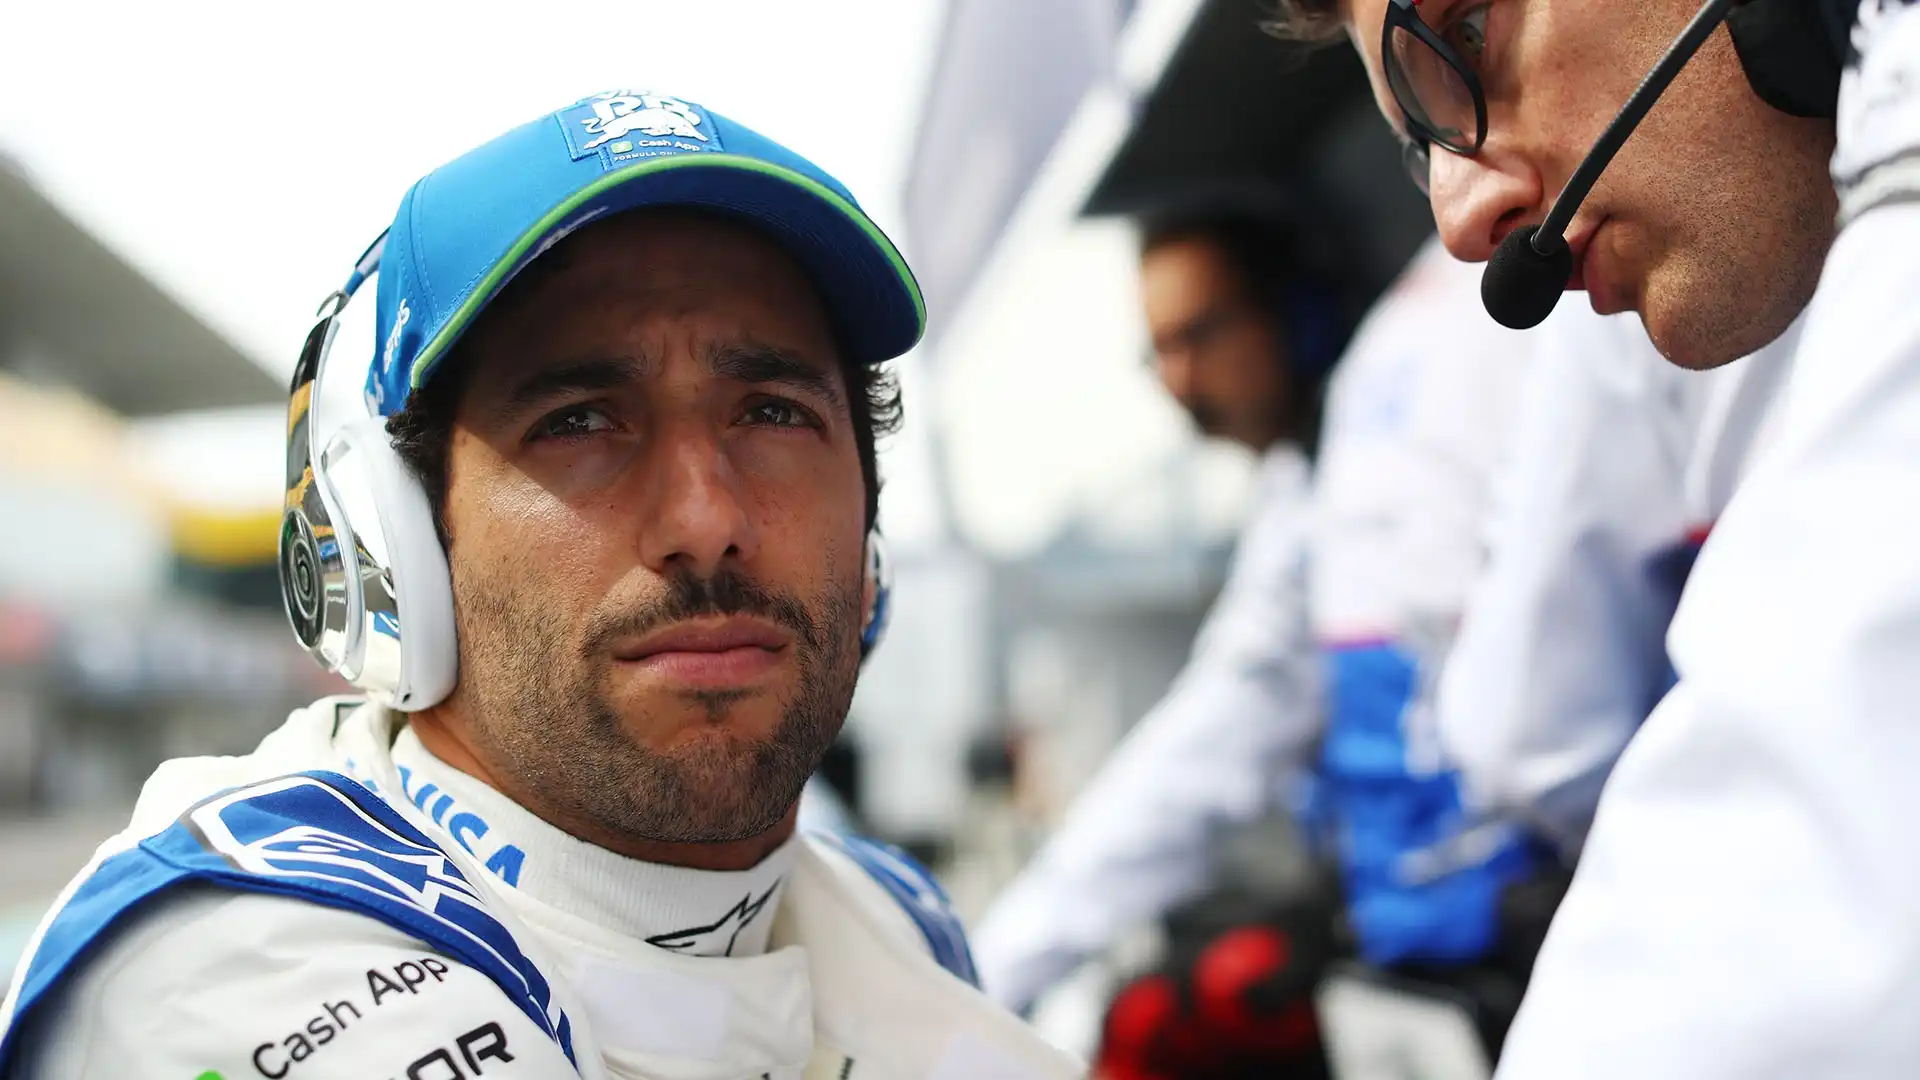 Secondo le indiscrezioni riportate da Motorsport, Daniel Ricciardo è a forte rischio